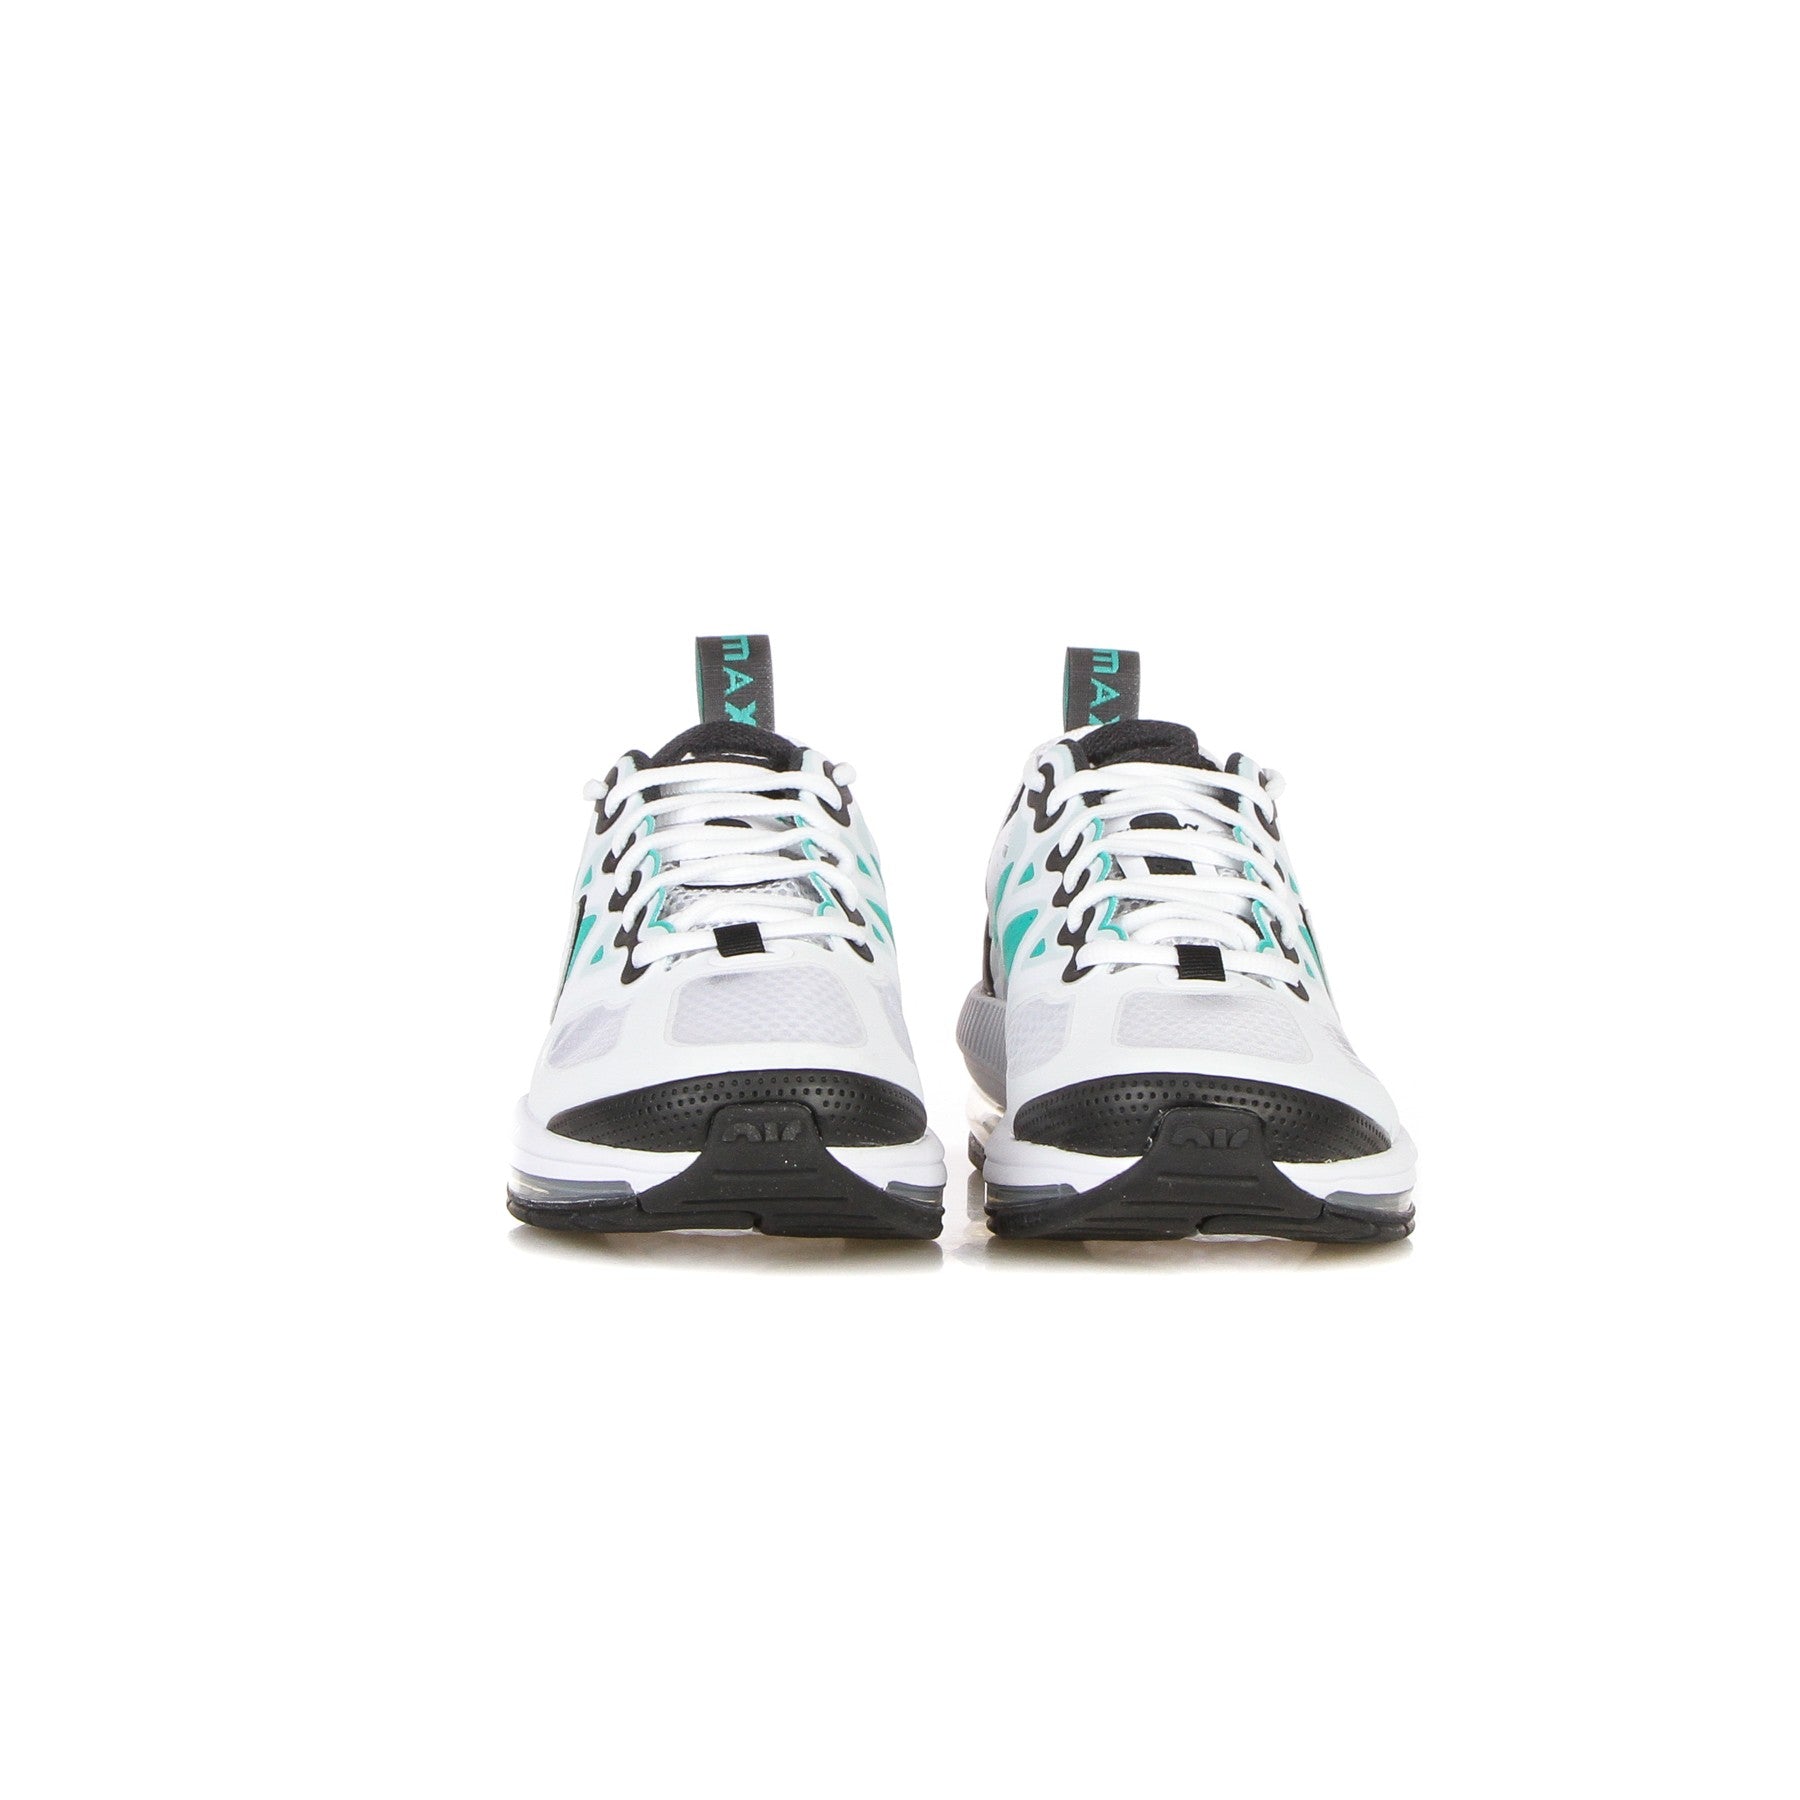 Nike, Scarpa Bassa Uomo Air Max Genome, Clear Emerald/white/black